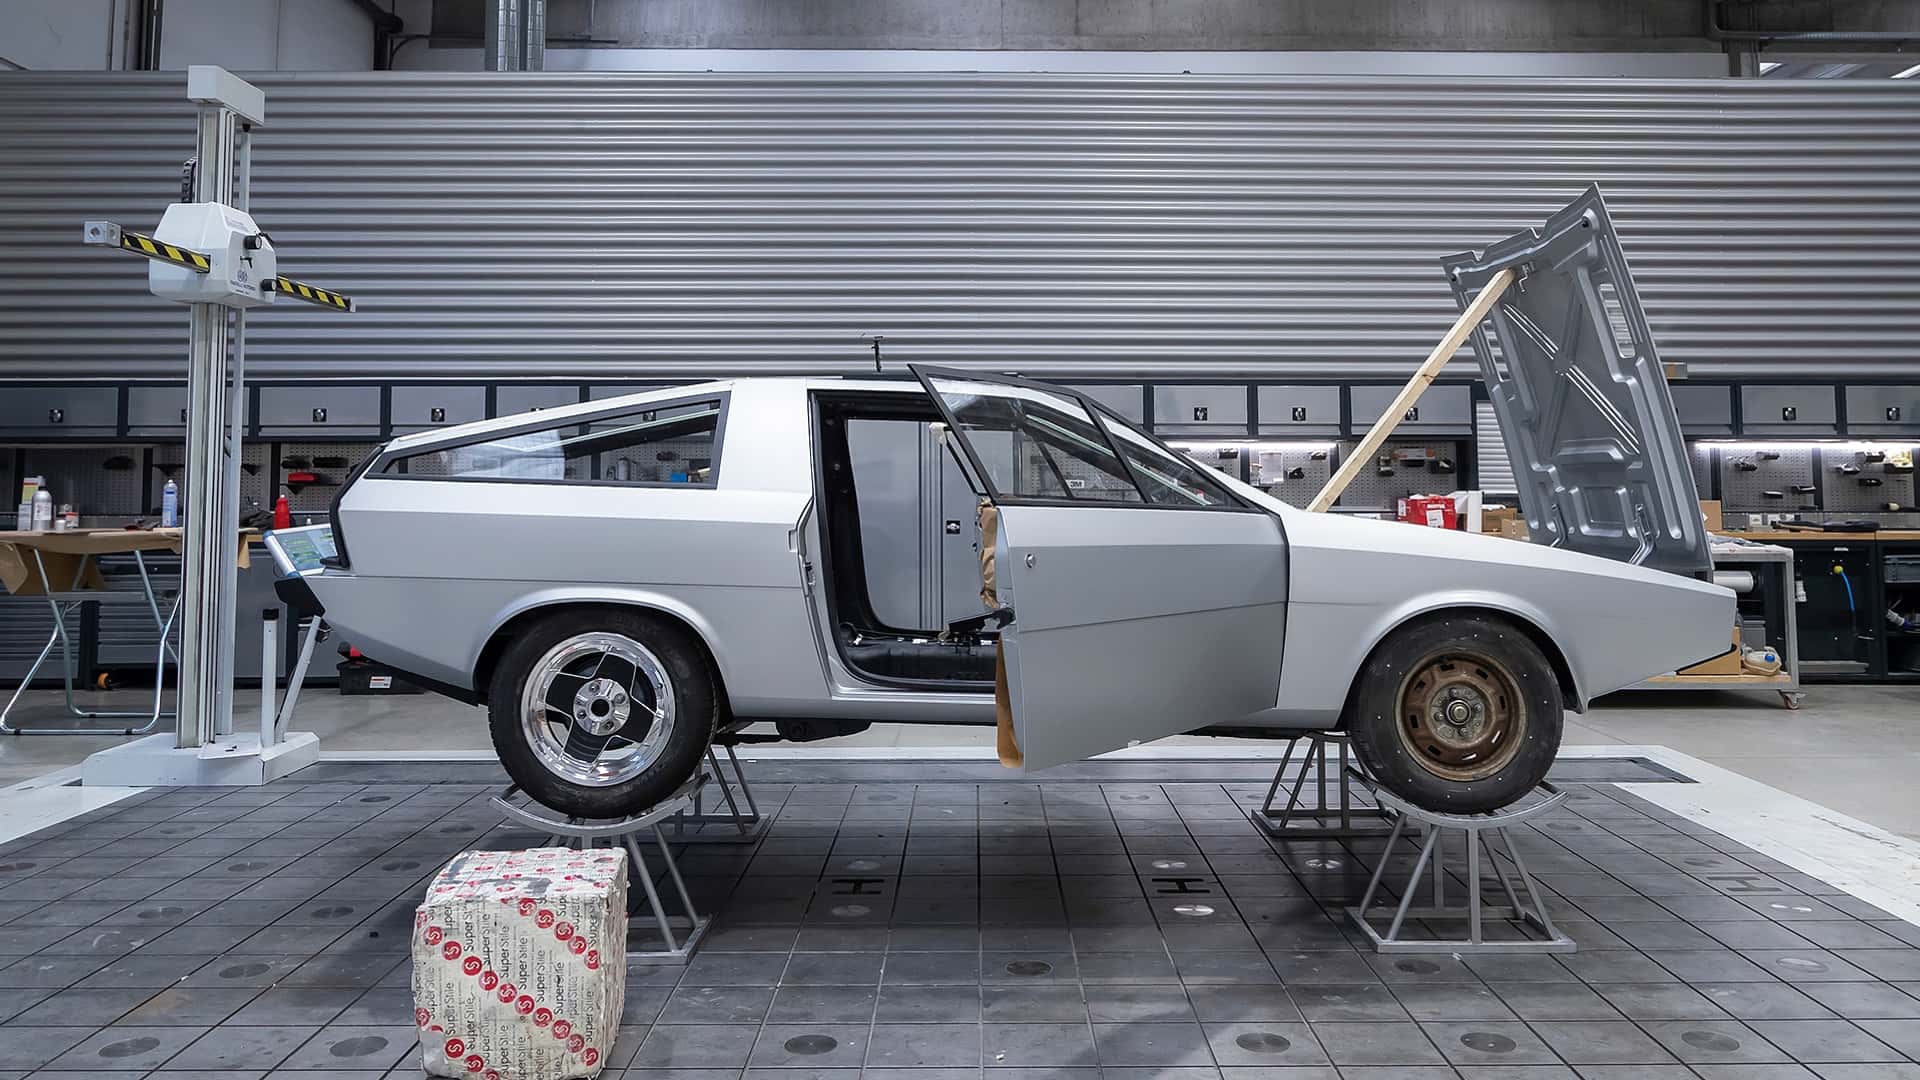 هيونداي تعيد إحياء سيارة بوني كوبيه الاختبارية الأيقونية في موديل عصري اختباري جديد 42